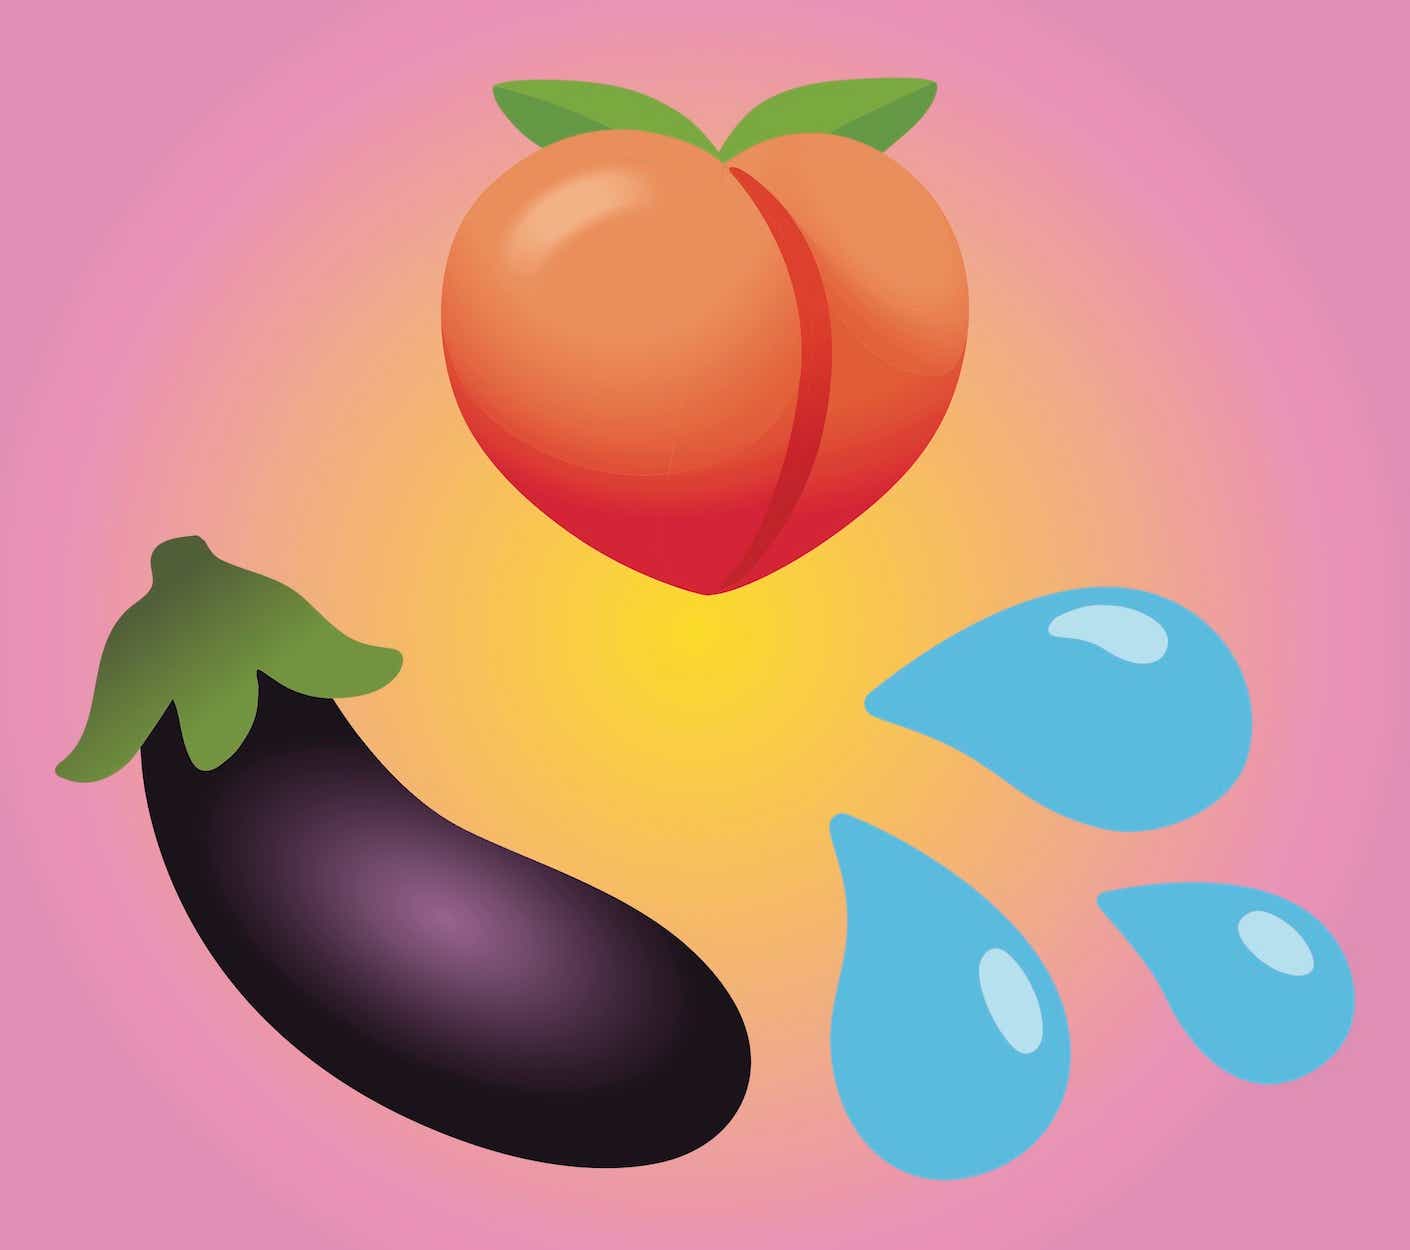 eggplant, peach, spray emoji